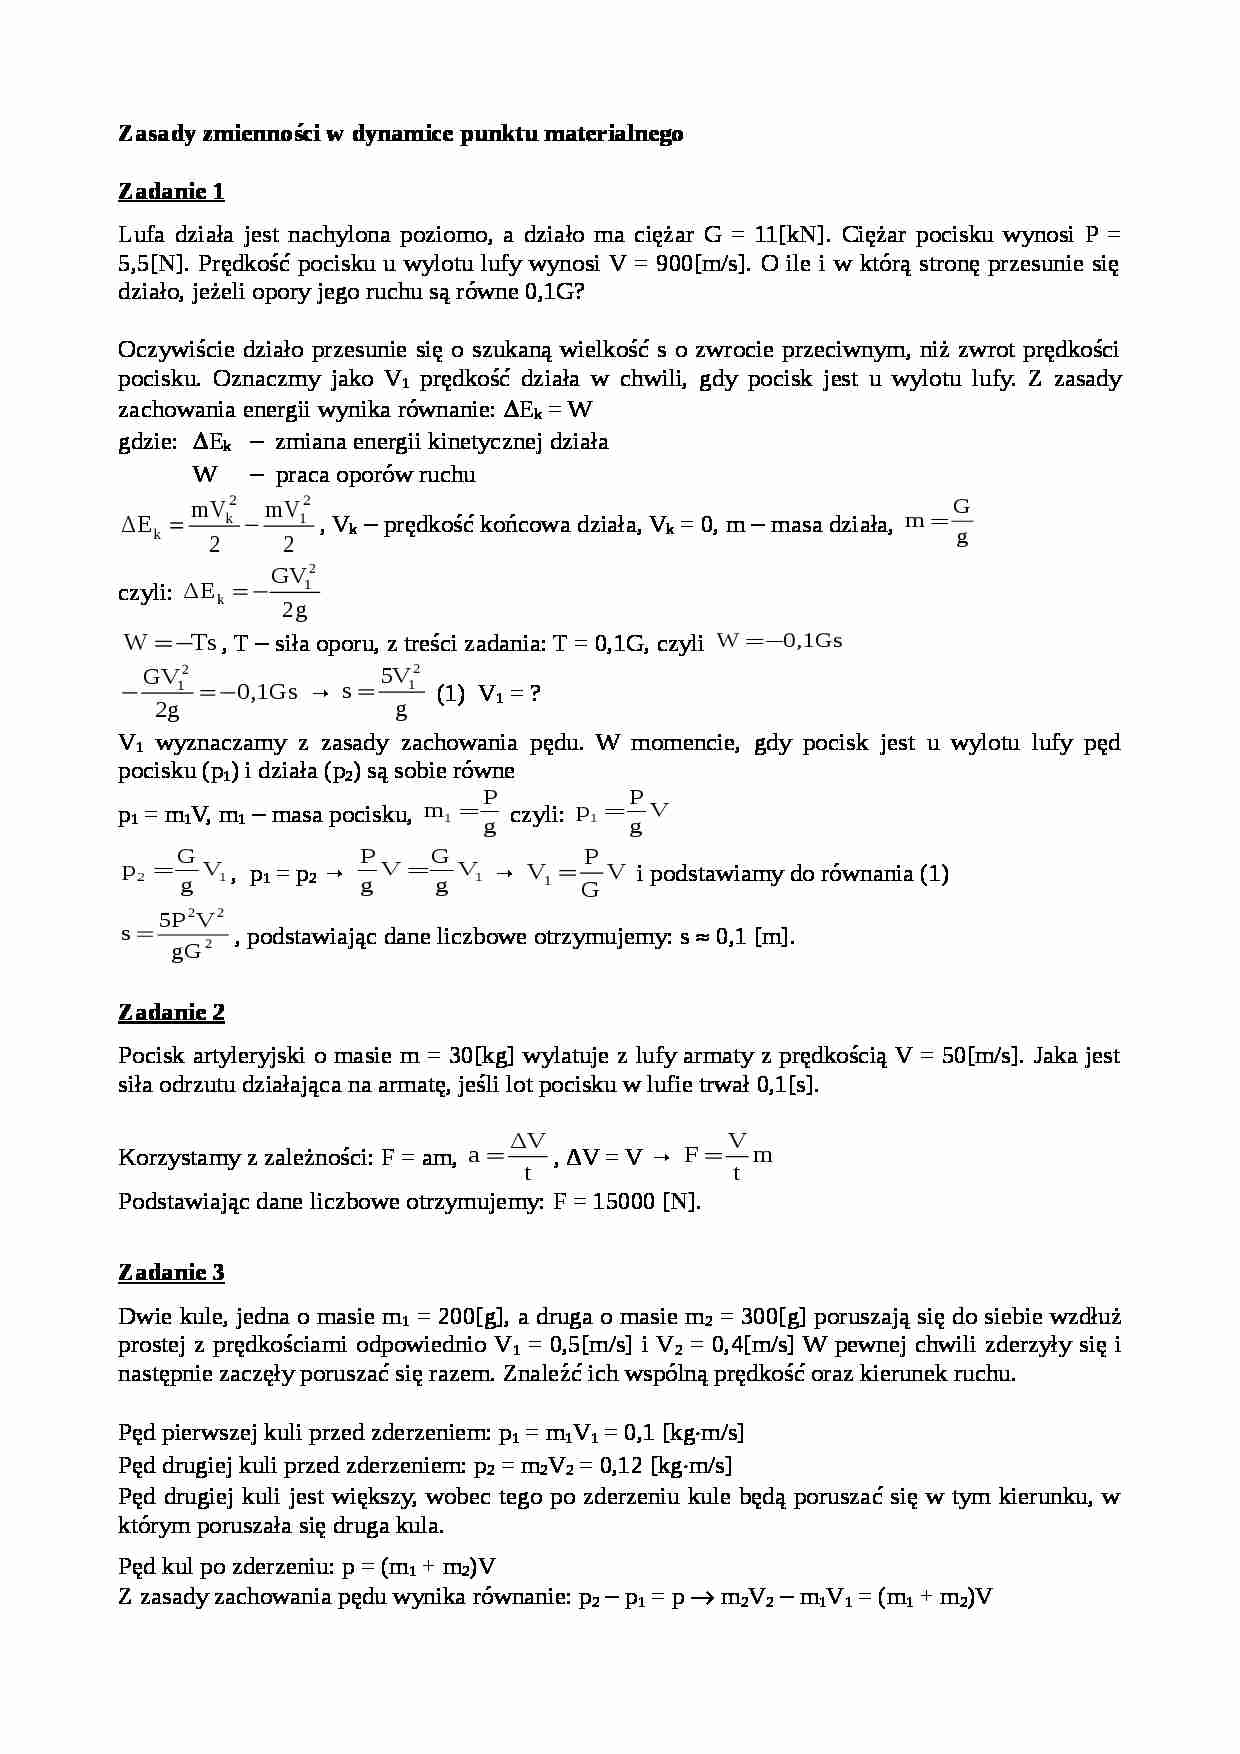 Zasady zmienności w dynamice punktu materialnego - zadania - strona 1